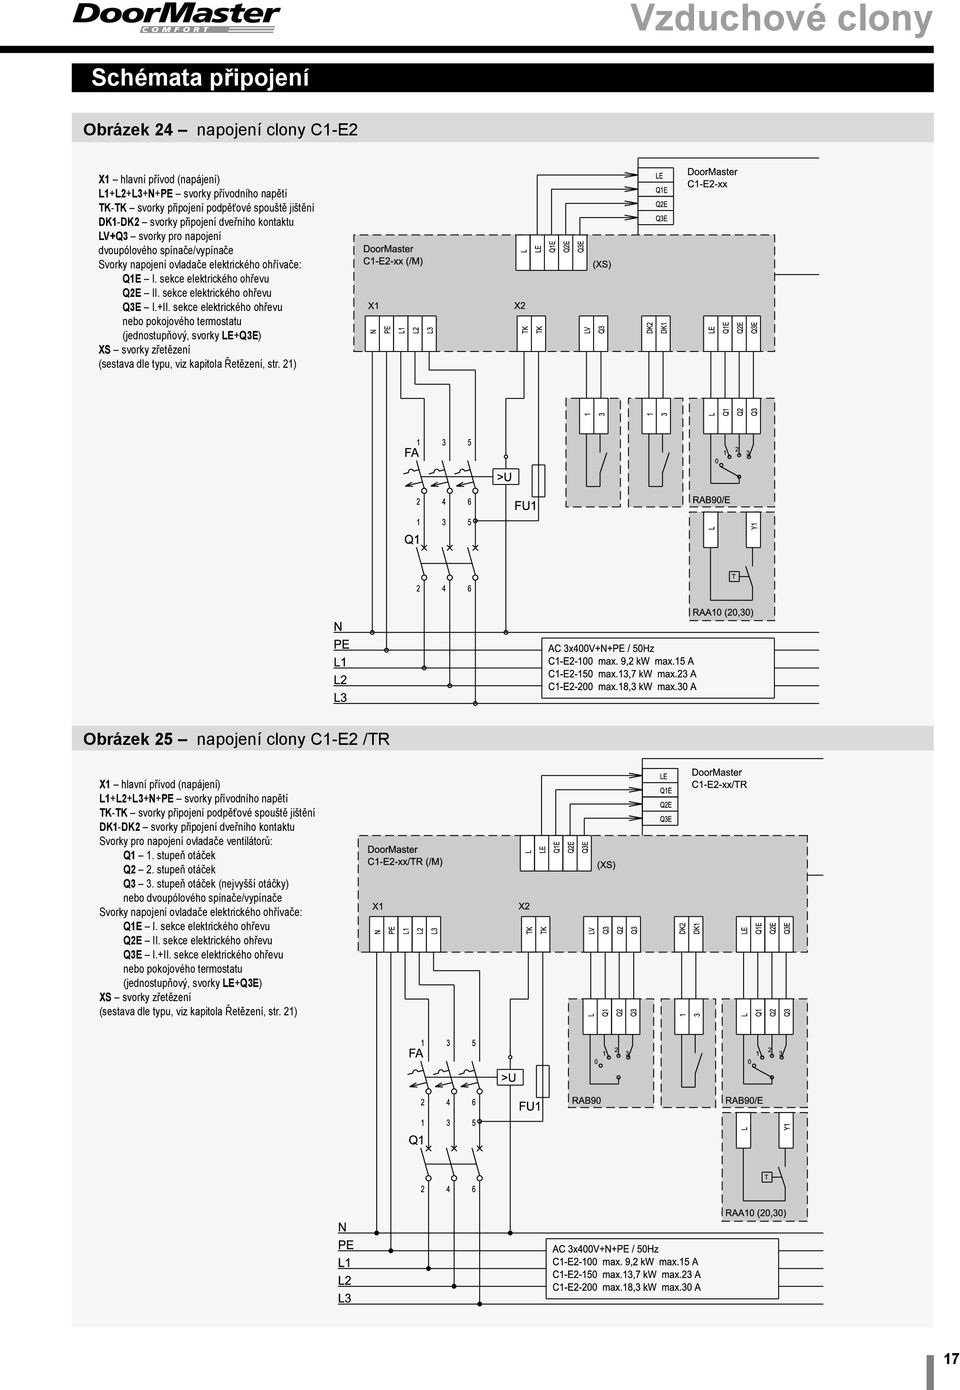 sekce elektrického ohřevu nebo pokojového termostatu (jednostupňový, svorky LE+Q3E) XS svorky zřetězení (sestava dle typu, viz kapitola Řetězení, str.